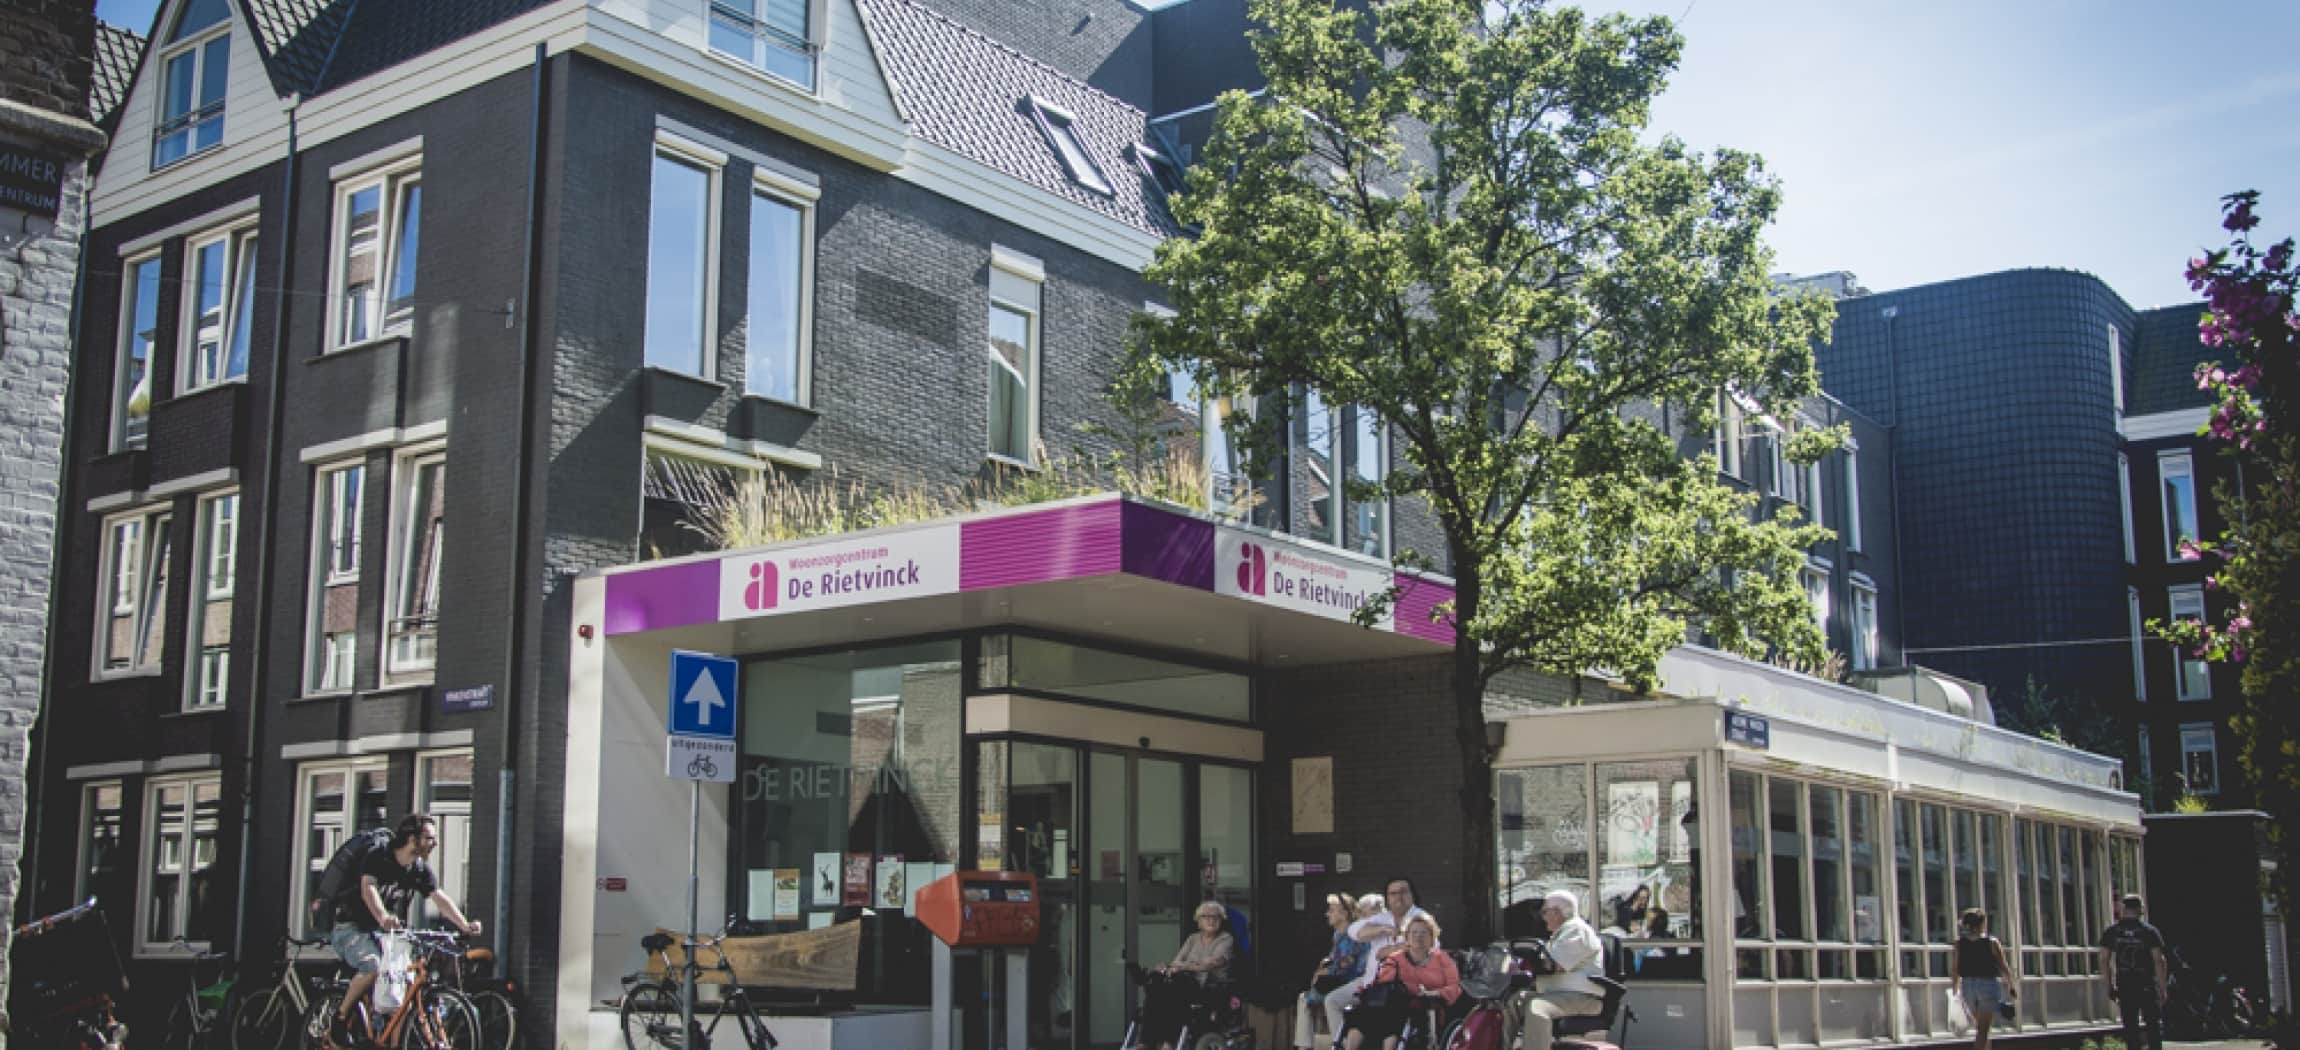 Verzorgingshuis De Rietvinck in de Jordaan Amsterdam Haarlemmerplein: een huis vol leven